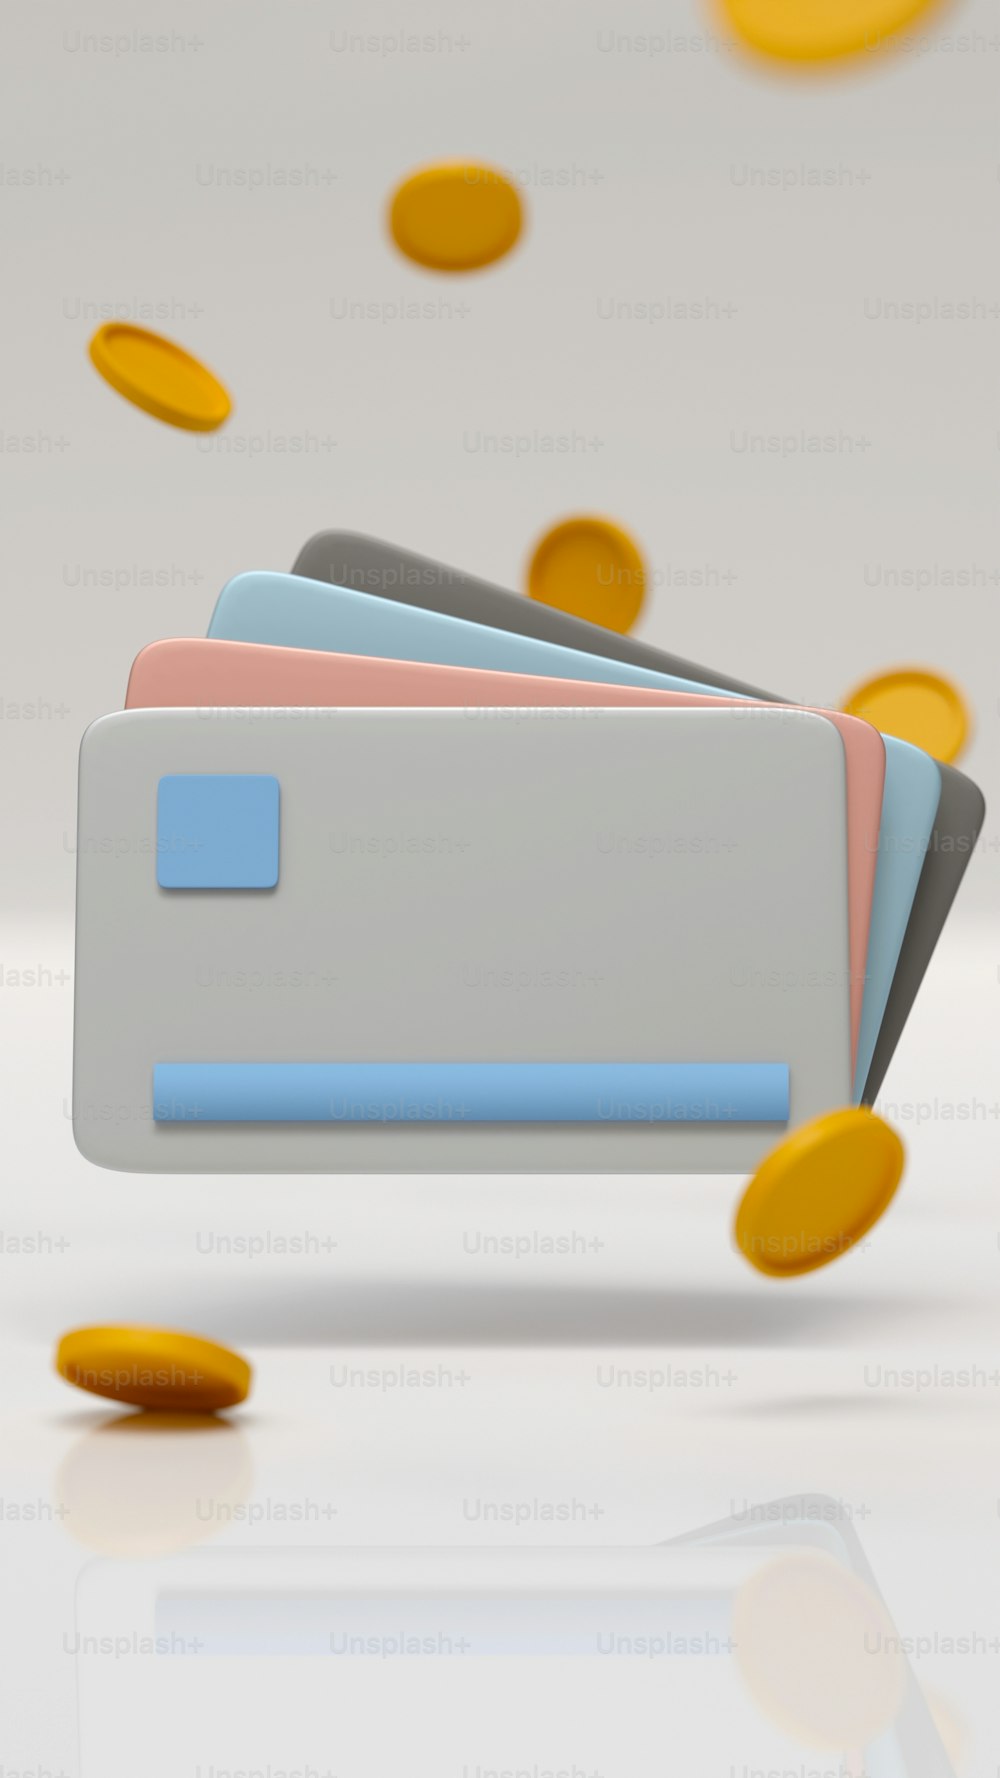 Una pila de tarjetas de crédito con un montón de monedas que salen de ella